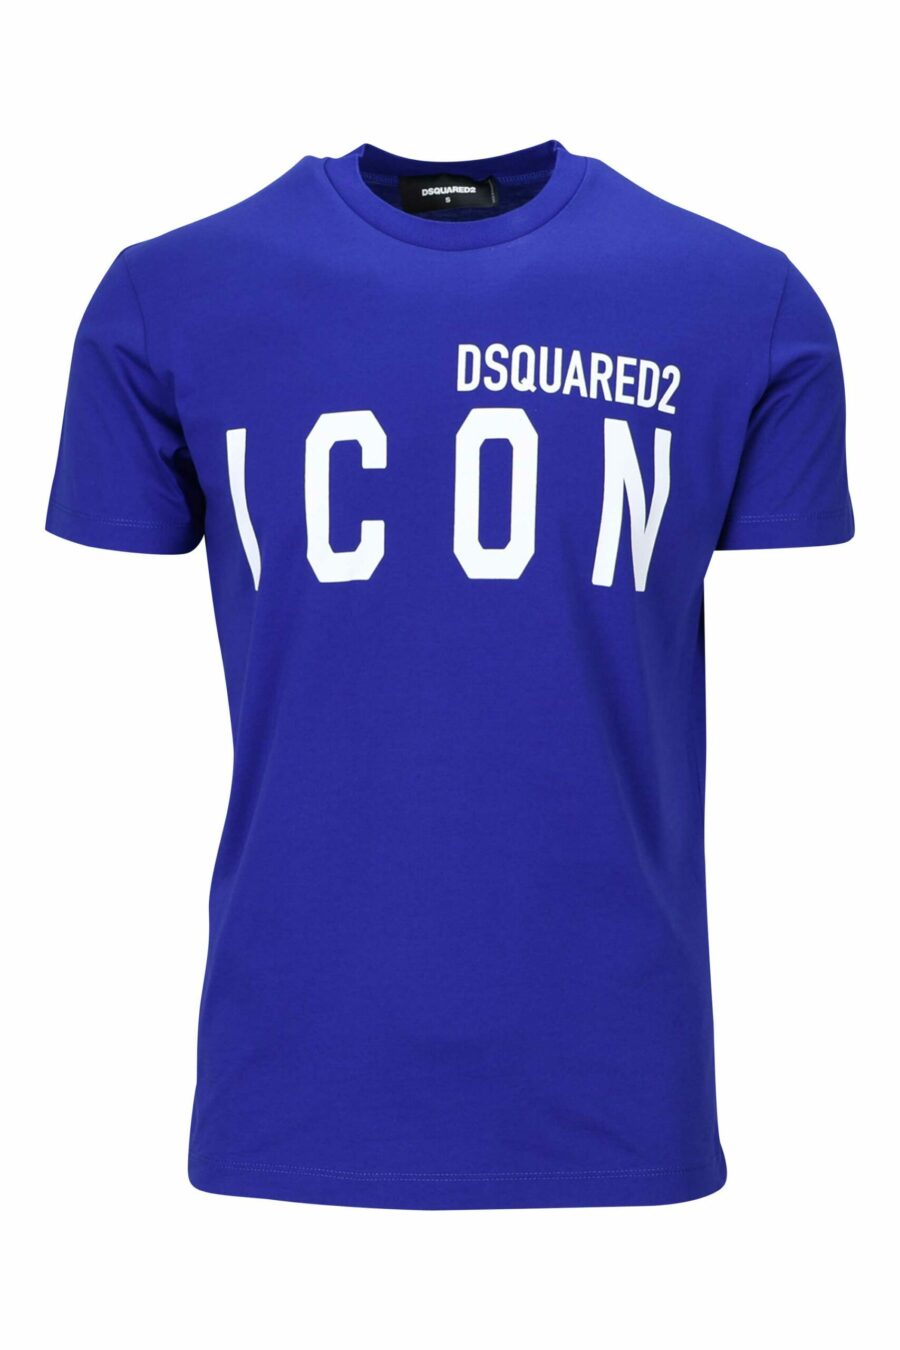 T-shirt azul eléctrica com maxilogo "ícone" branco - 8054148035525 à escala